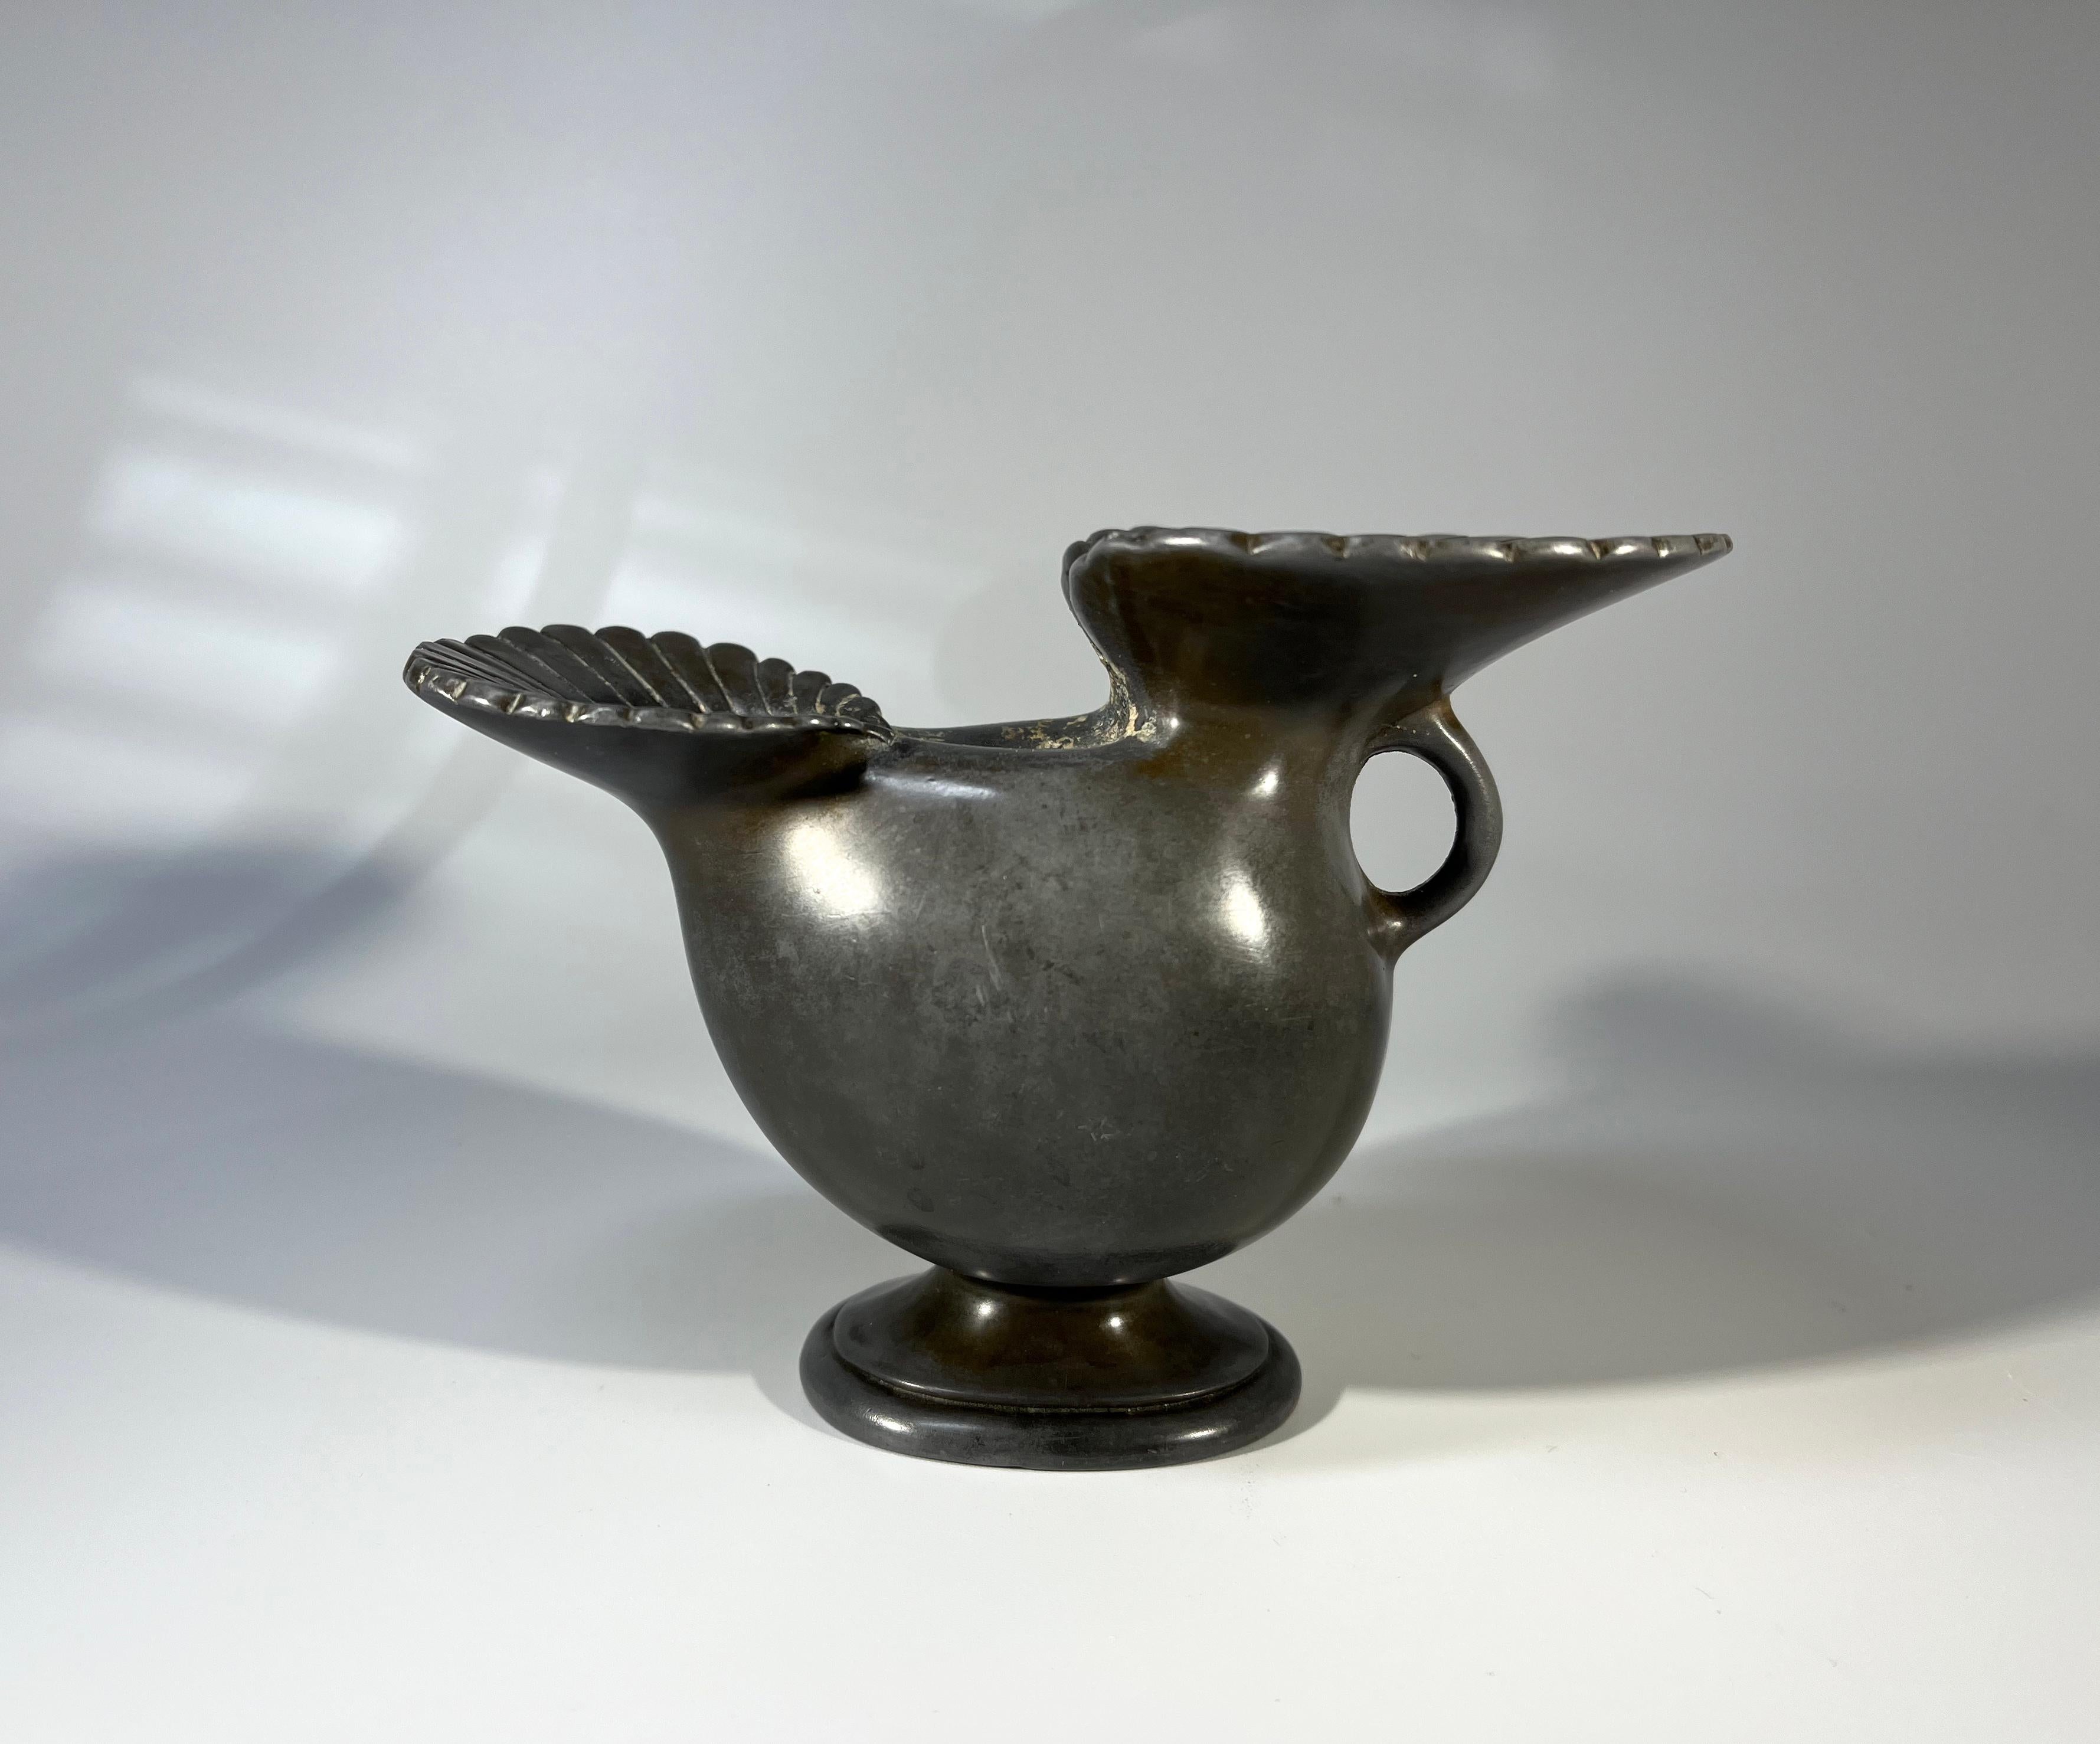 Ce vase bulbeux Just Andersen of Denmark, datant des années 1930, est orné de deux entonnoirs cannelés.
Fabriqué en métal Disko - un métal spécifiquement inventé par Just Andersen en combinant le plomb et l'antimoine.
Estampillé et numéroté D118 à